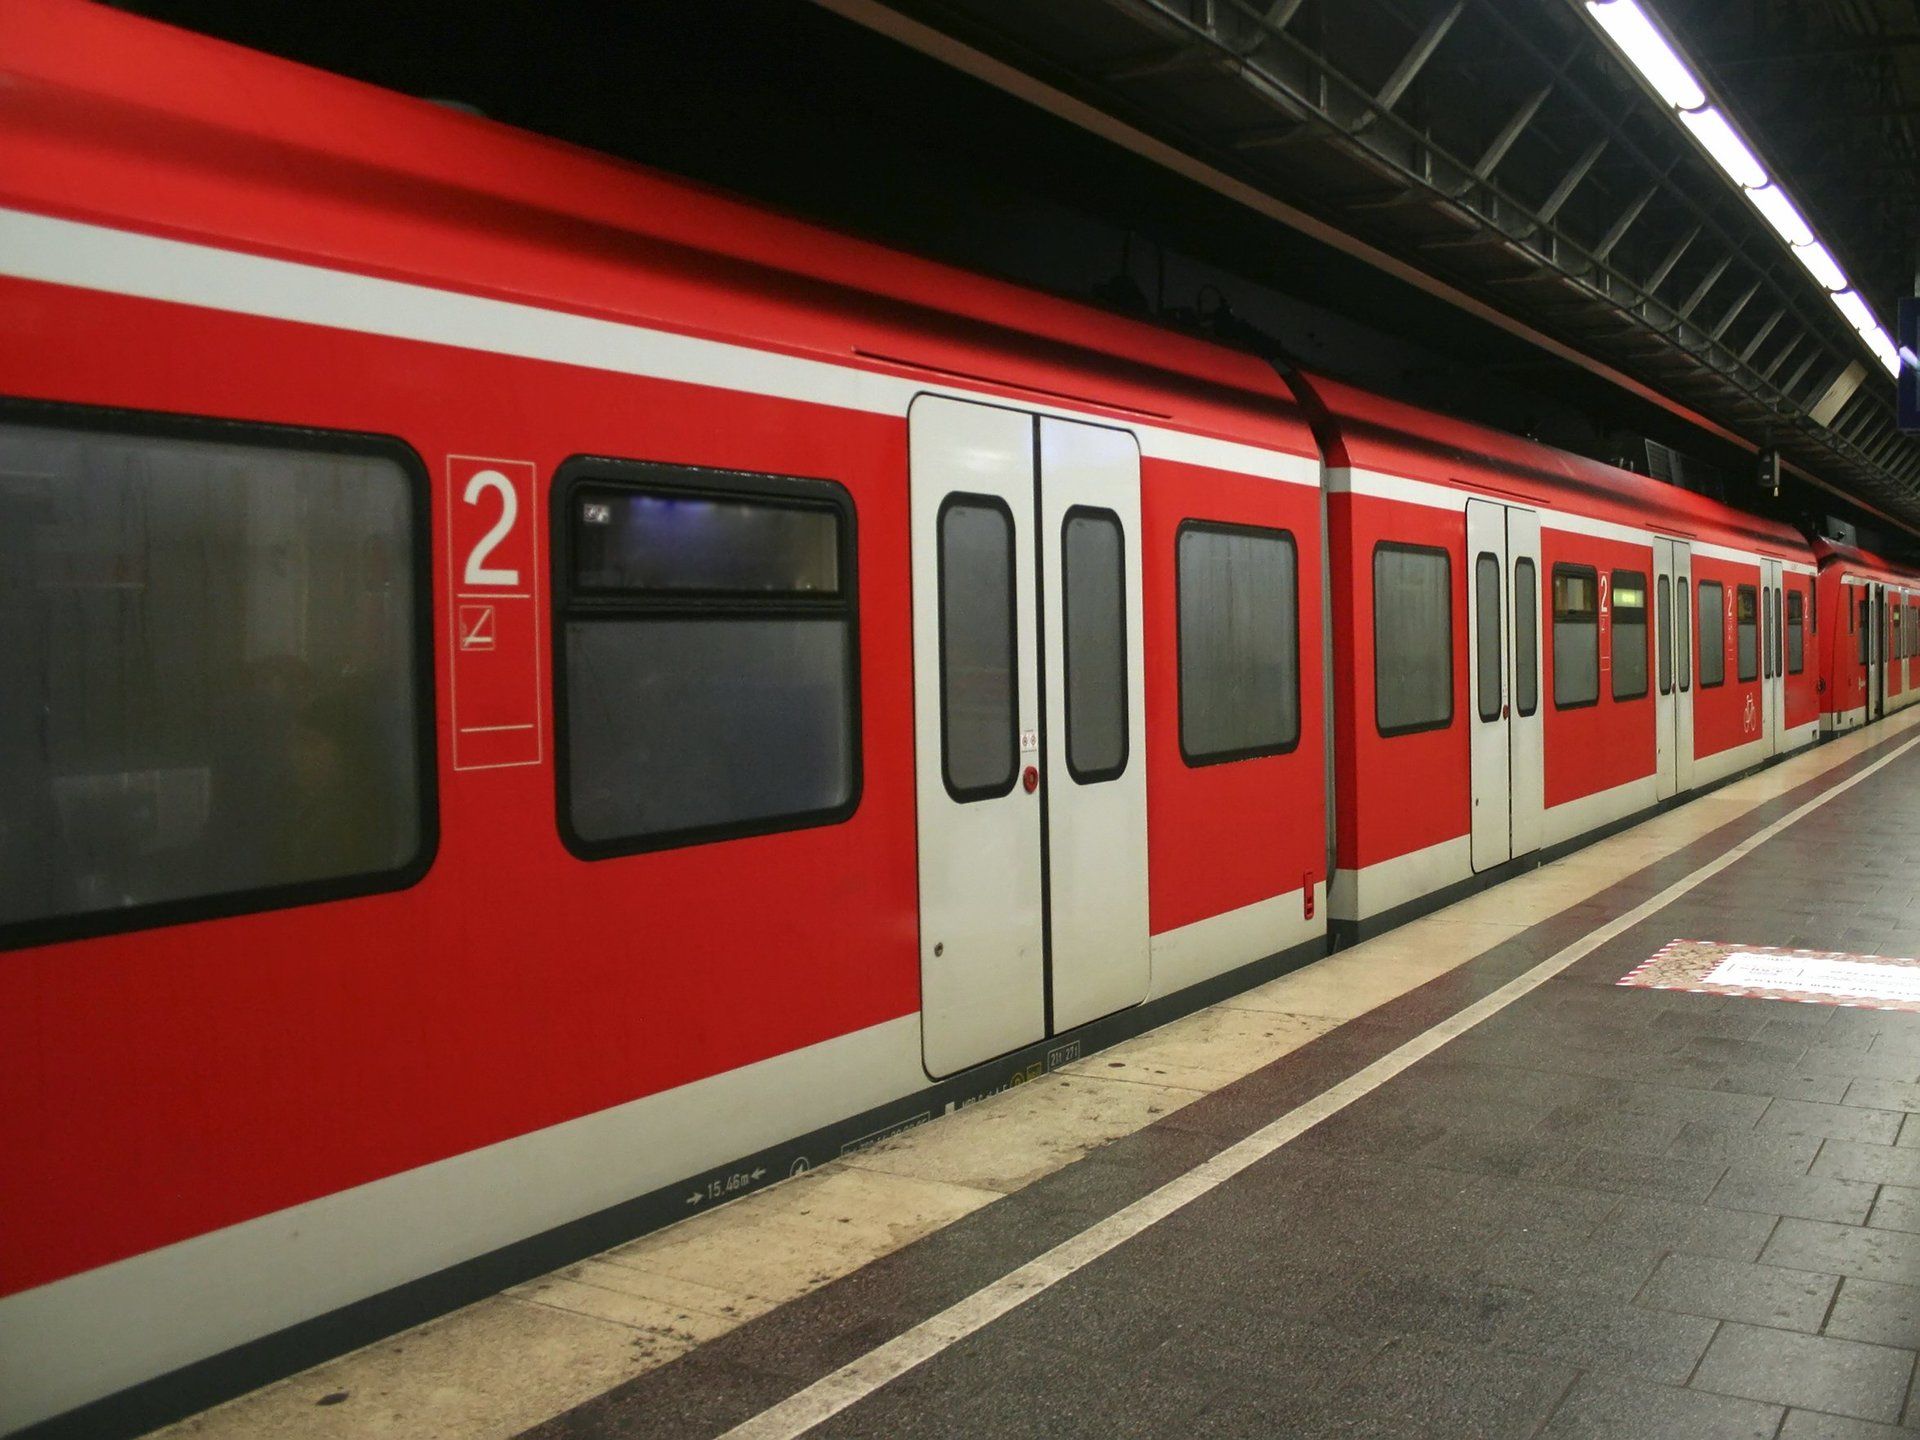 Bild einer S-Bahn in einem Bahnhof